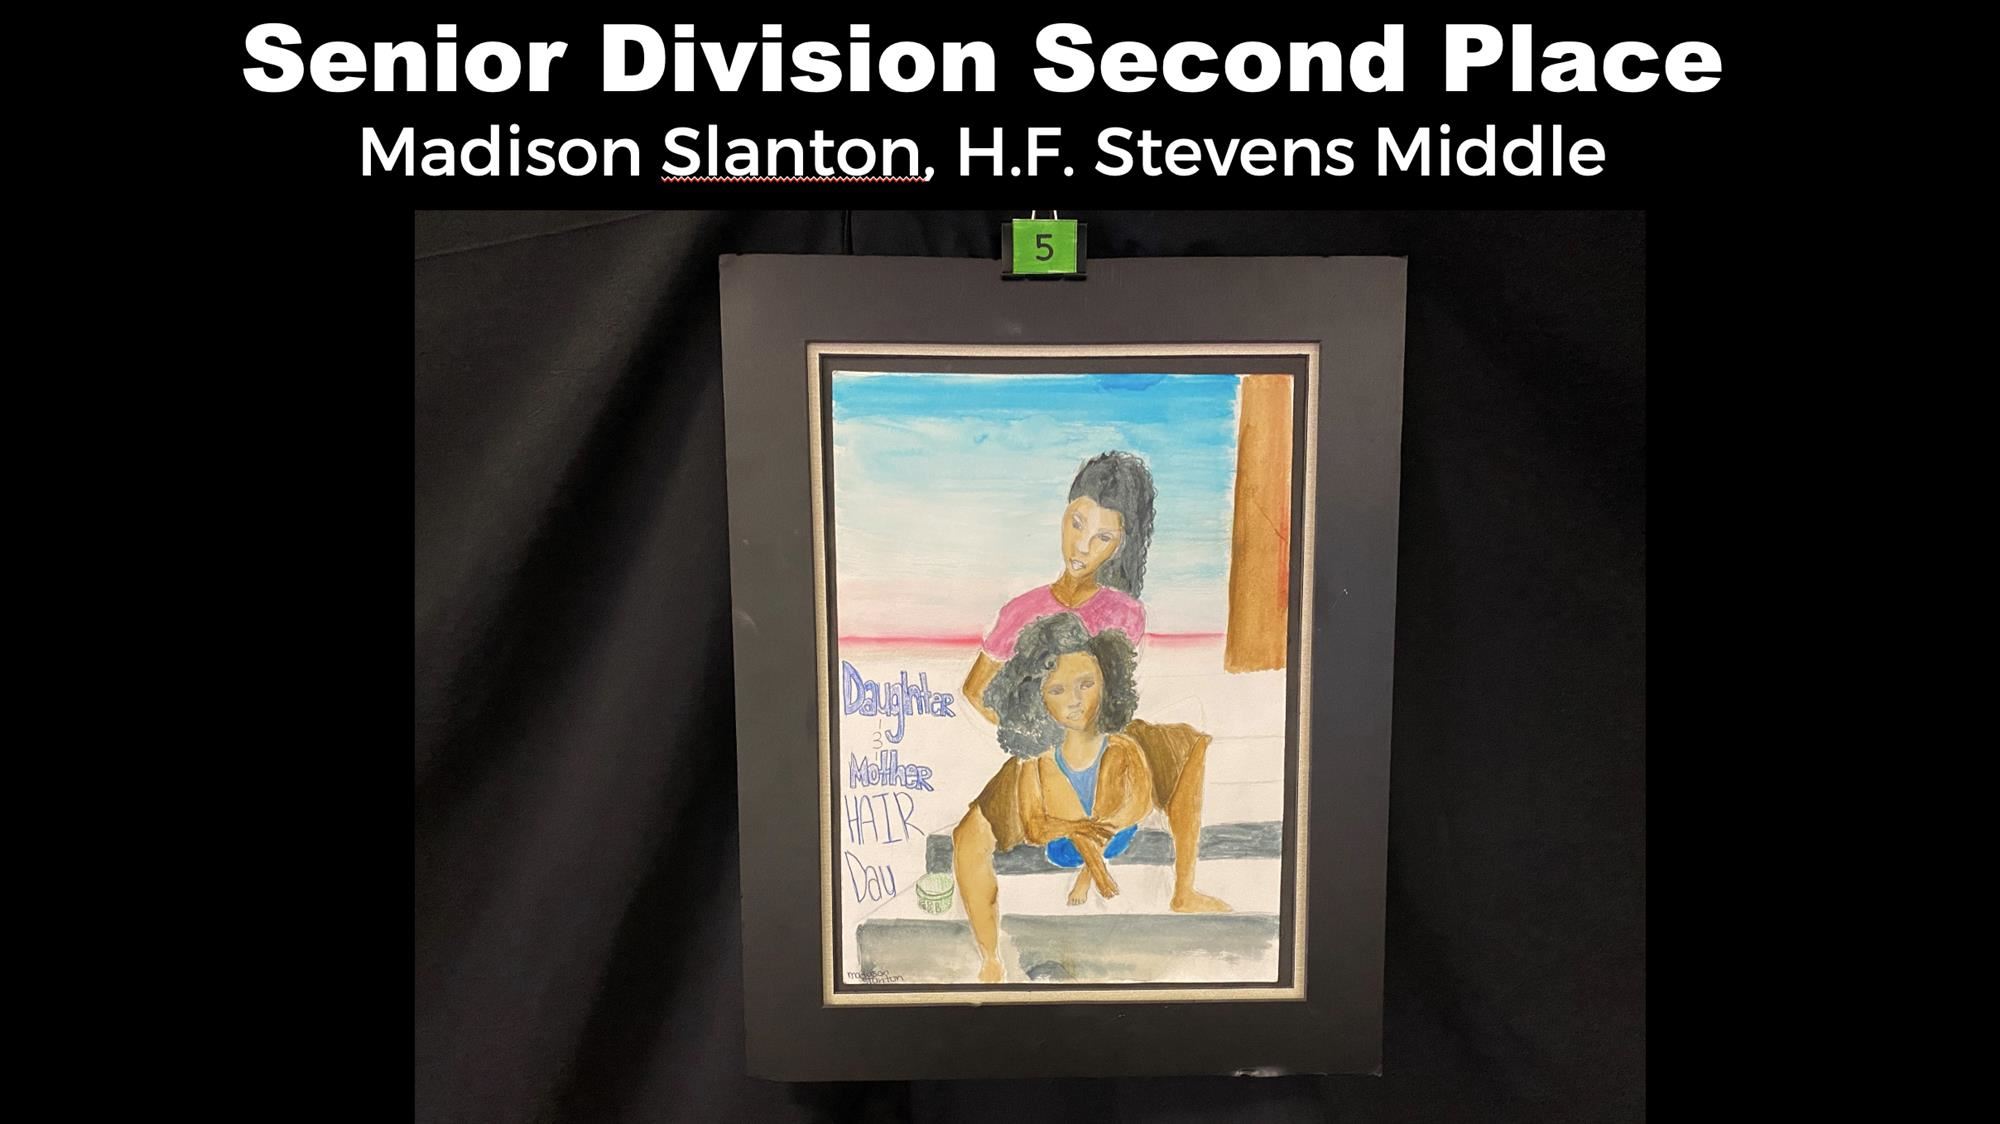 Madison Slanton, H.F. Stevens Middle 